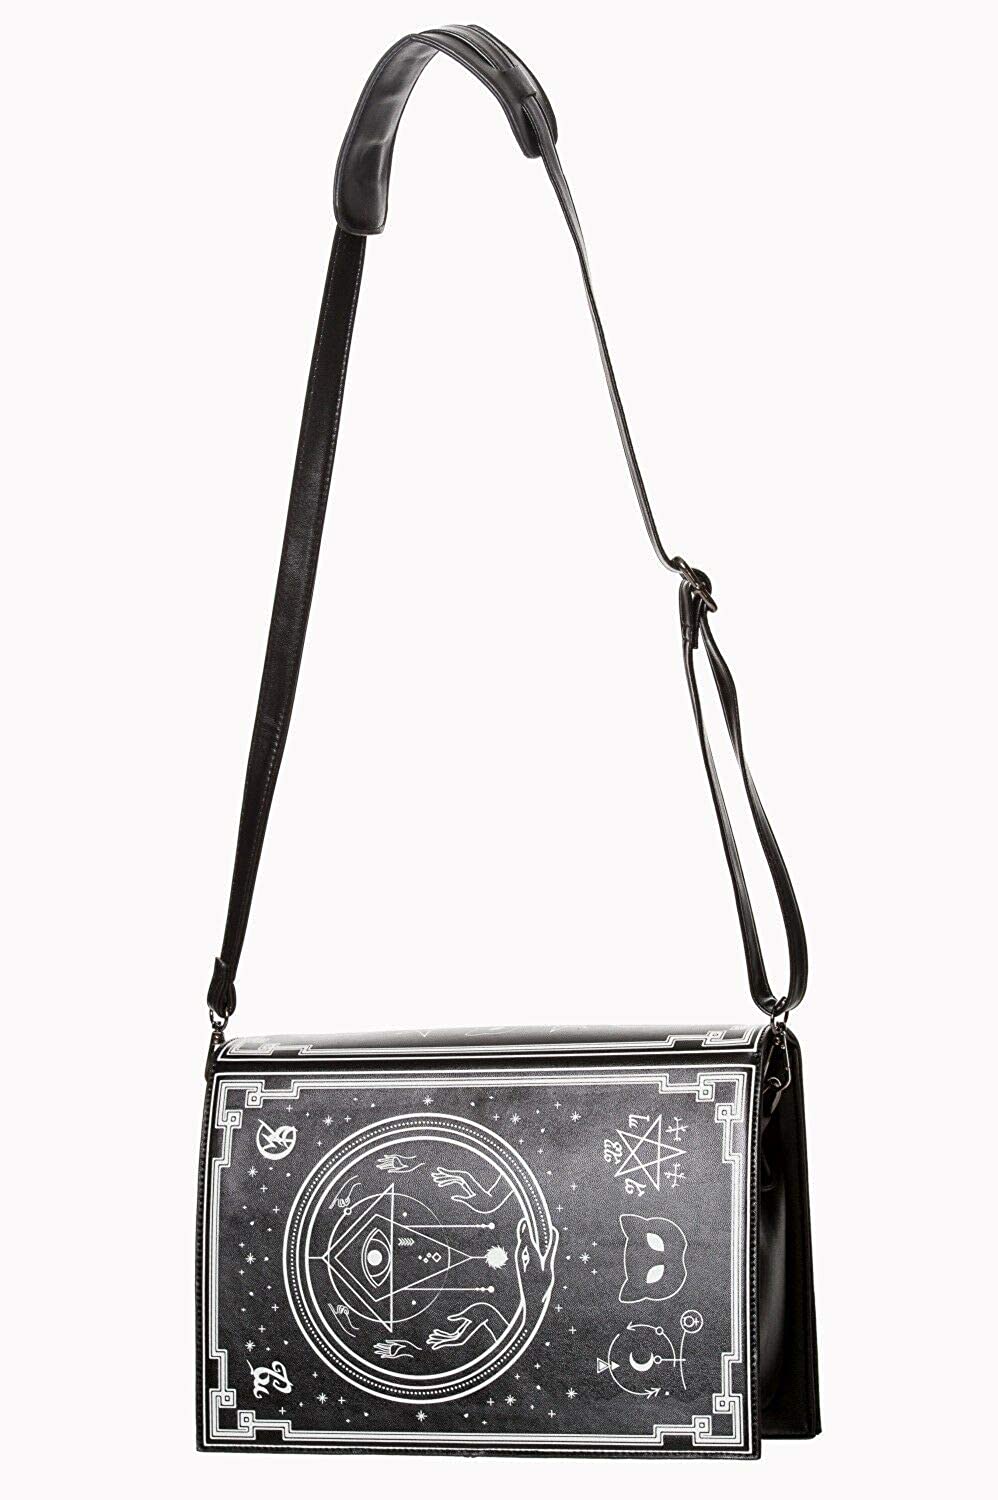 Spellbinder Shoulder Bag with Cat Pentagram and Occult Symbols Handbag - Black or Off-White - One Size (Black)